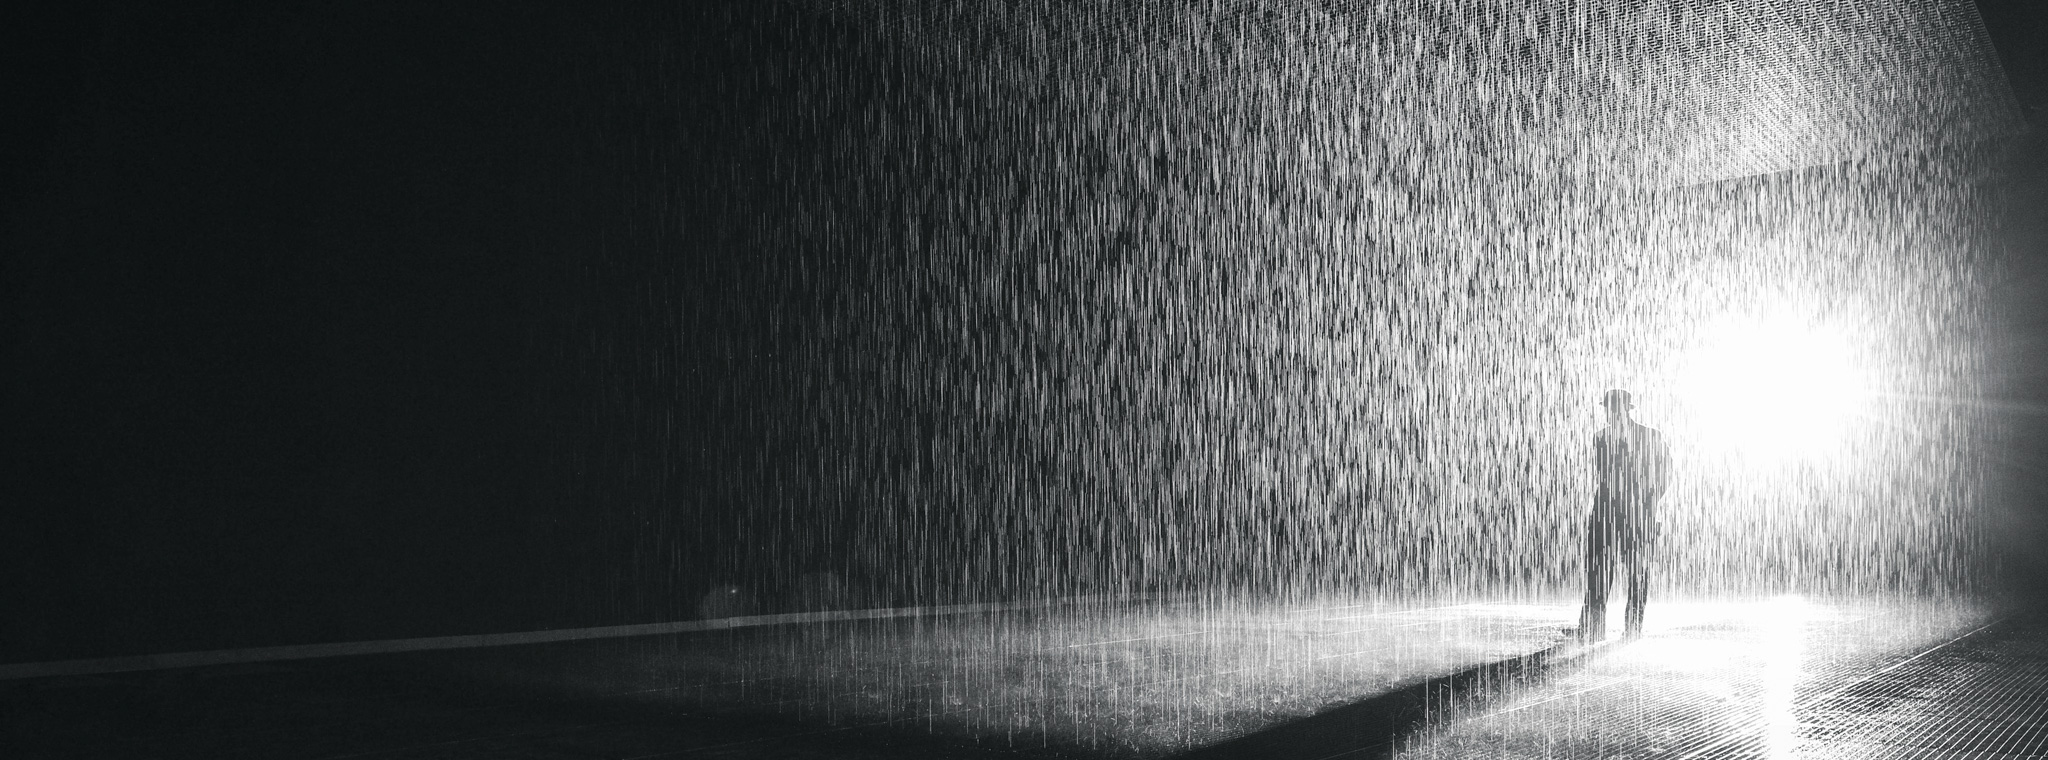 Rain Room (photo)